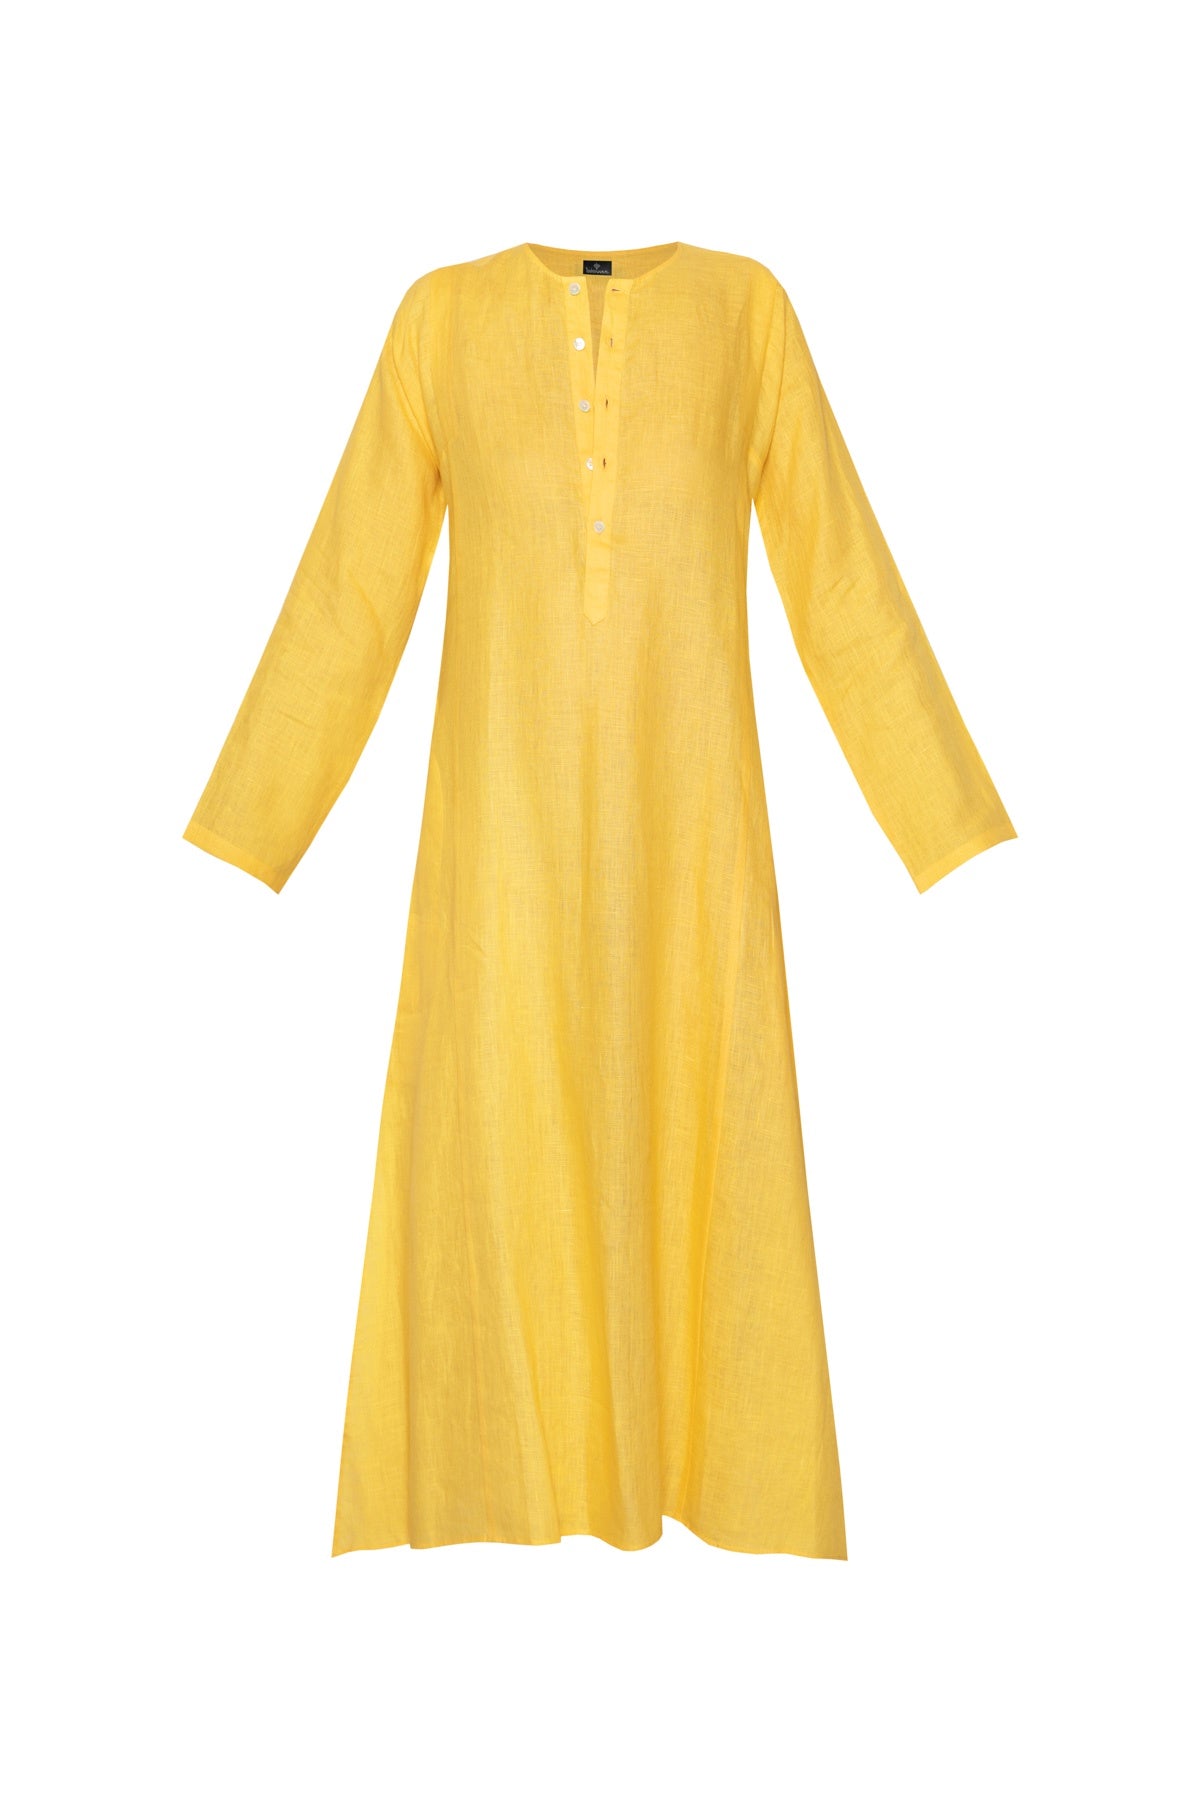 Lulu Linen Dress - Yellow